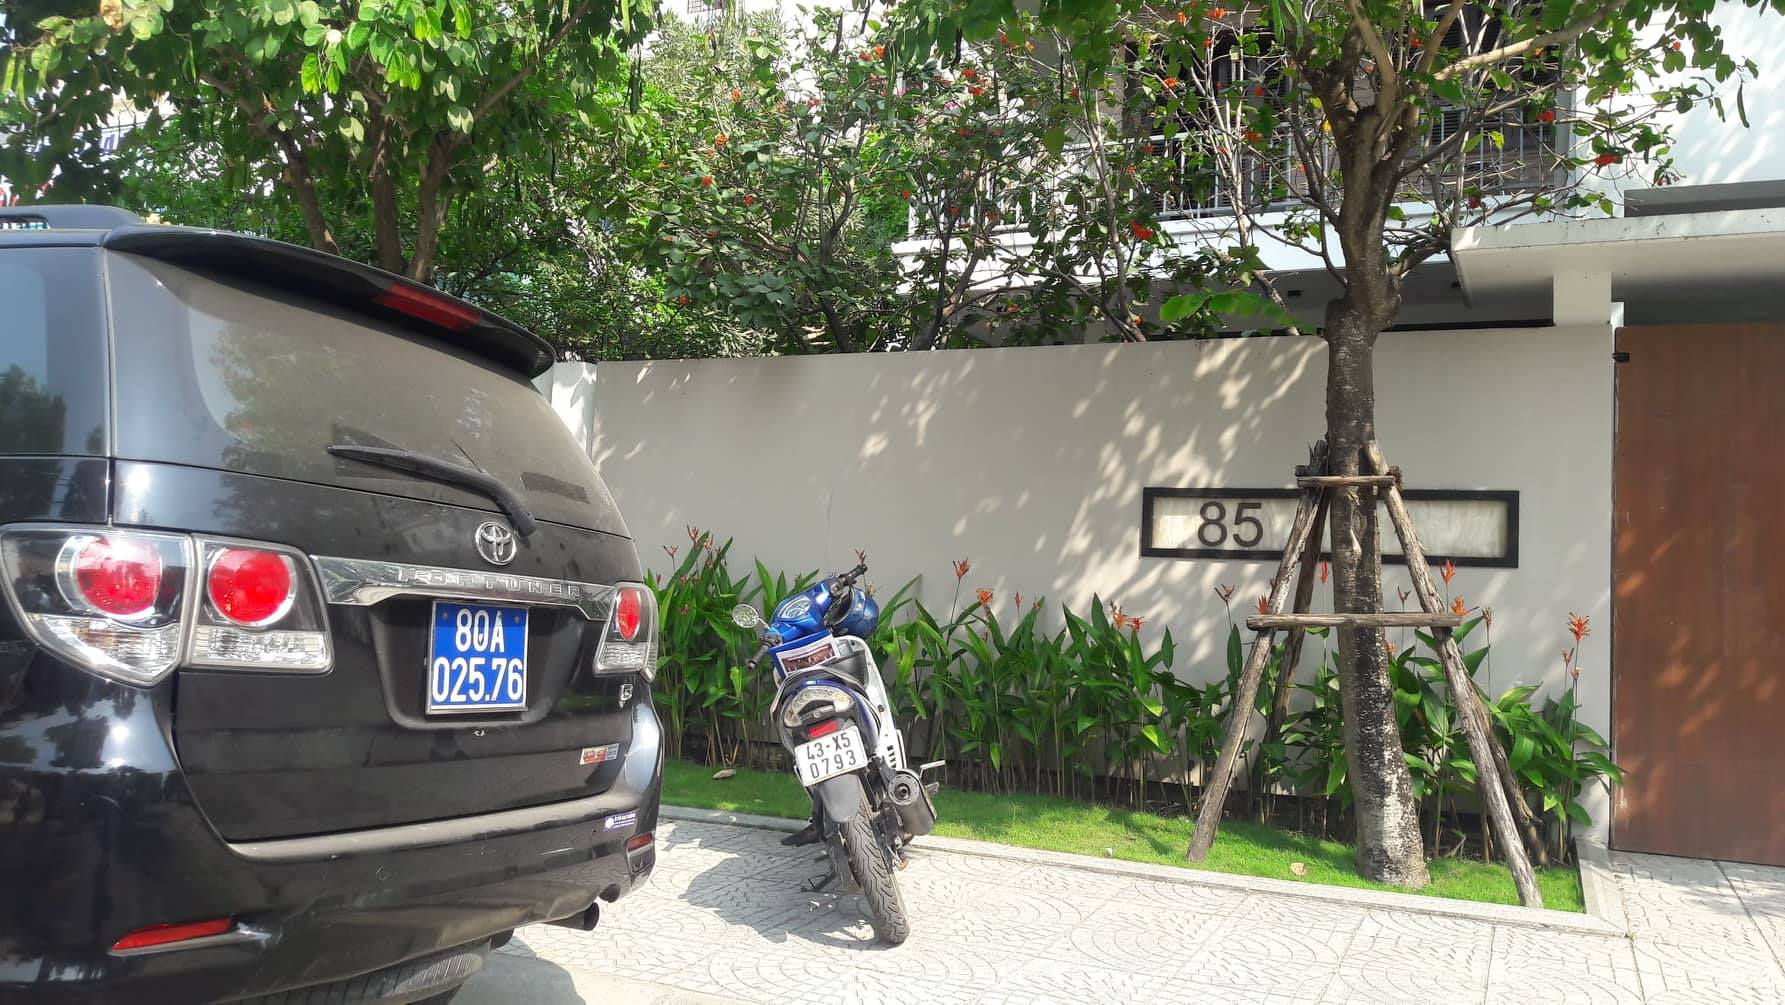 Bộ Công an khám xét nhà ông Nguyễn Ngọc Tuấn tại số 85 đường Hoàng Kế Viên (quận Sơn Trà, Đà Nẵng)